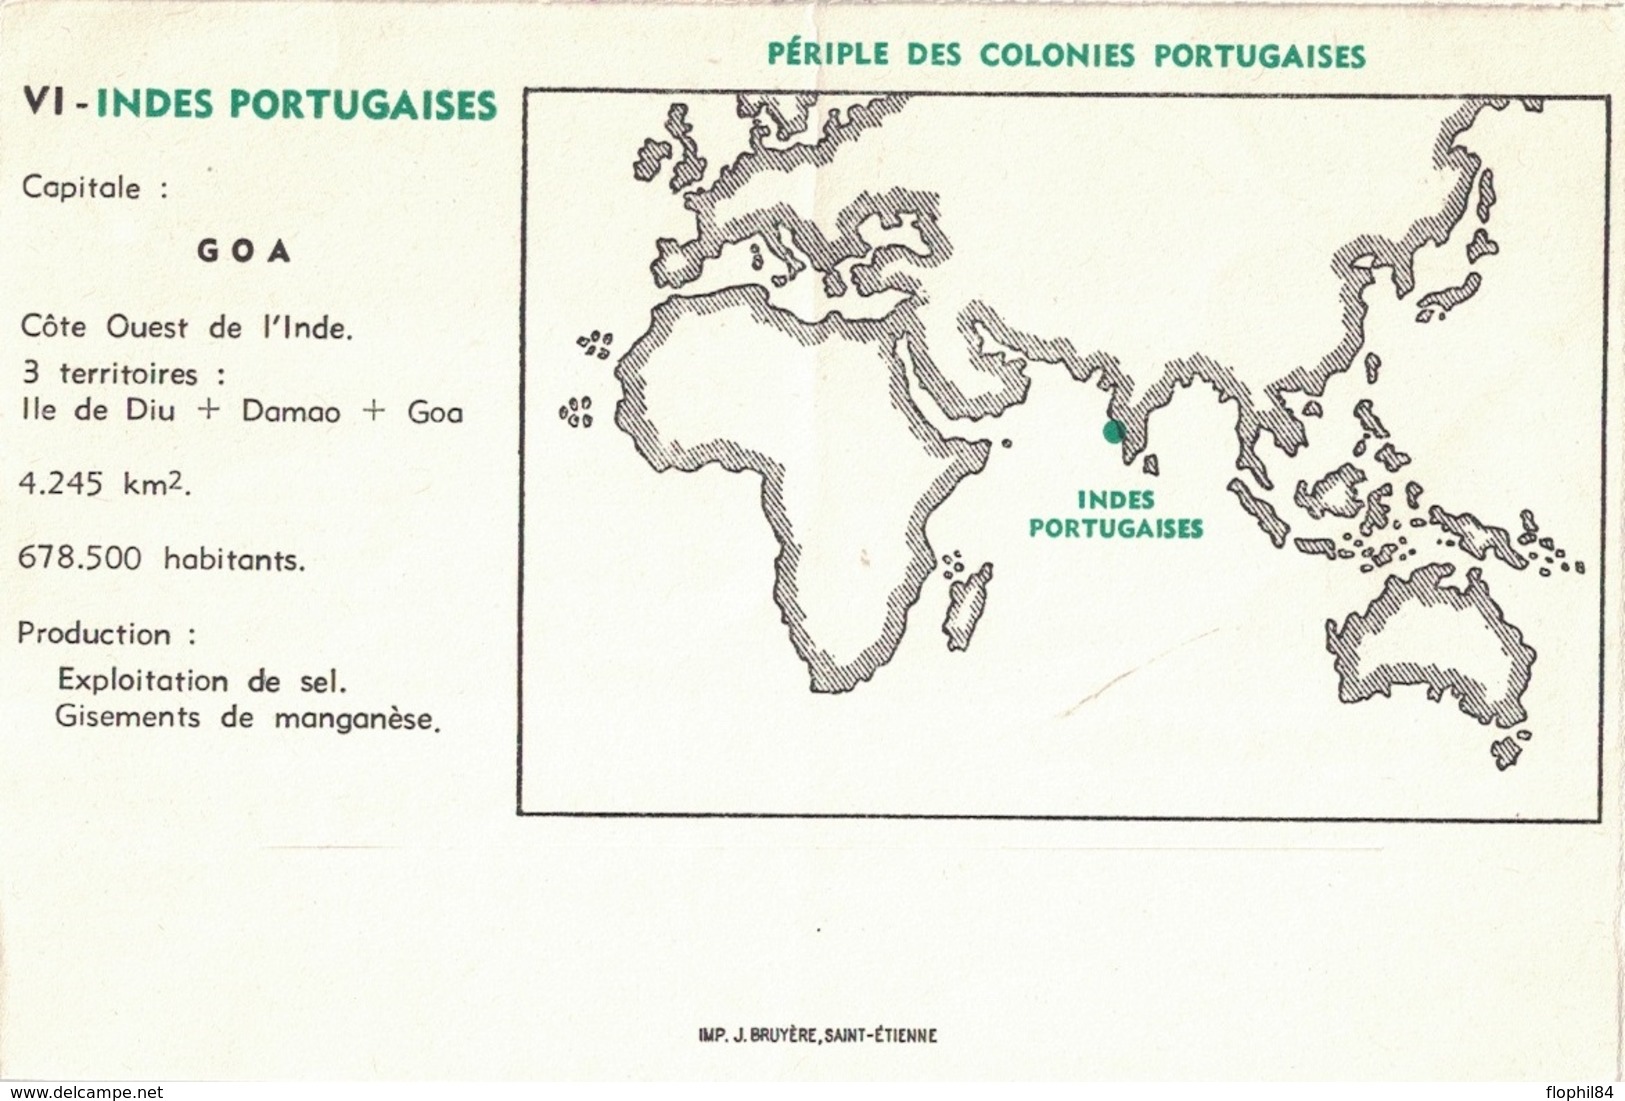 INDE PORTUGAISE - GOA - 1957 - ENVELOPPE PUBLICITAIRE LABORATOIRES BOCQUET A DIEPPE -SEINE MARITIME - PUERICRINE. - India Portuguesa